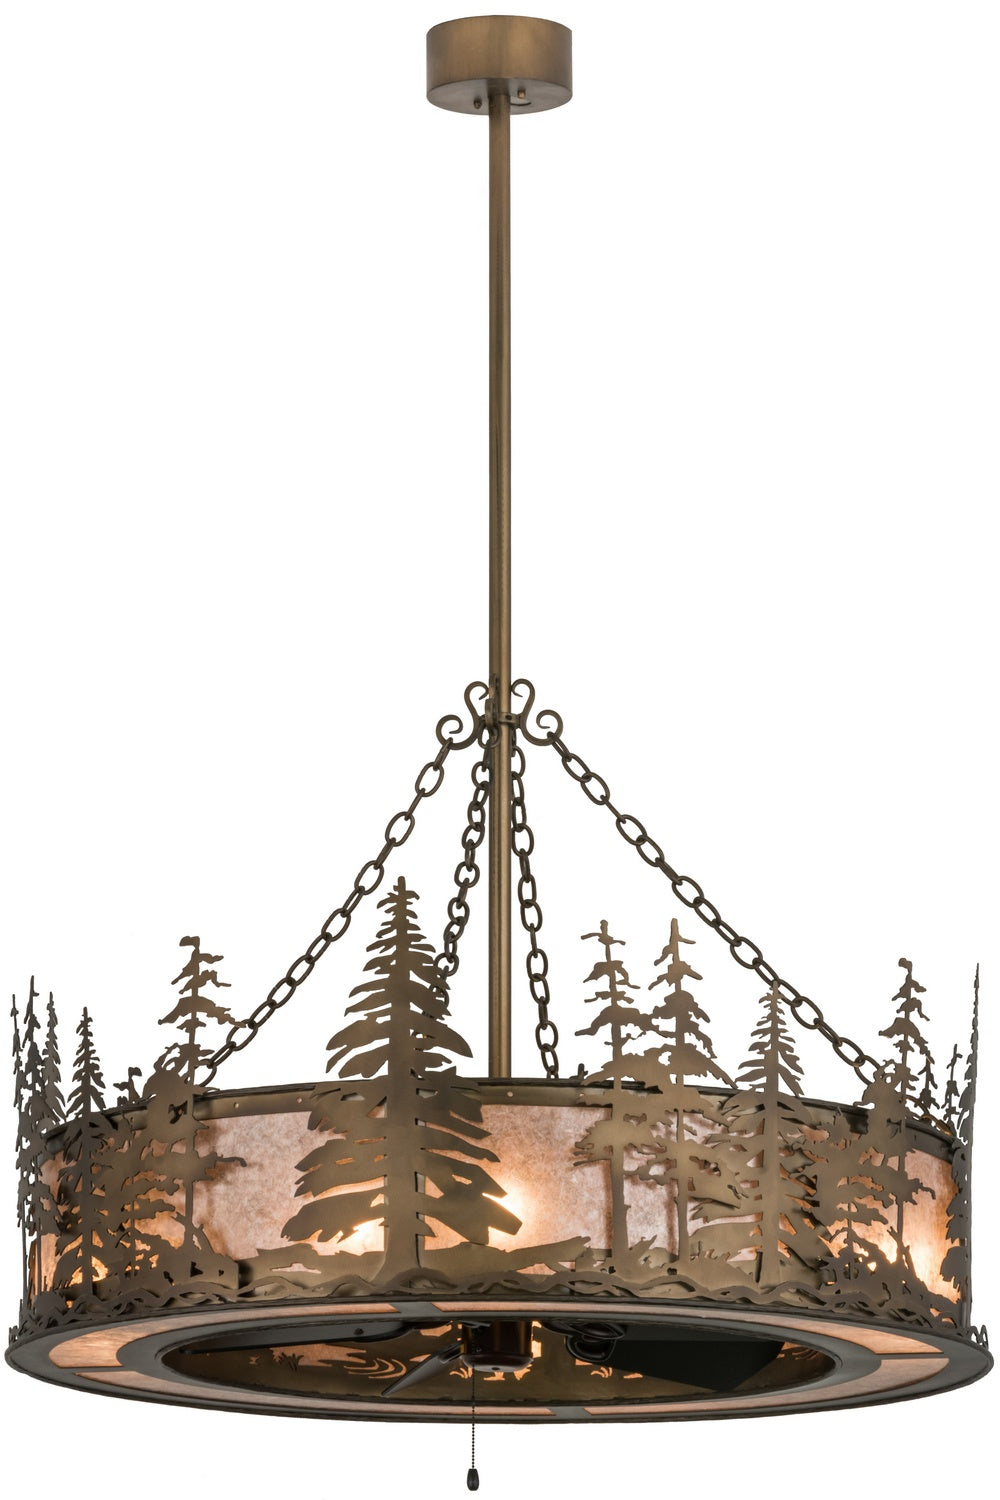 Meyda Tiffany Tall Pines 160575 Ceiling Fan - Antique Copper